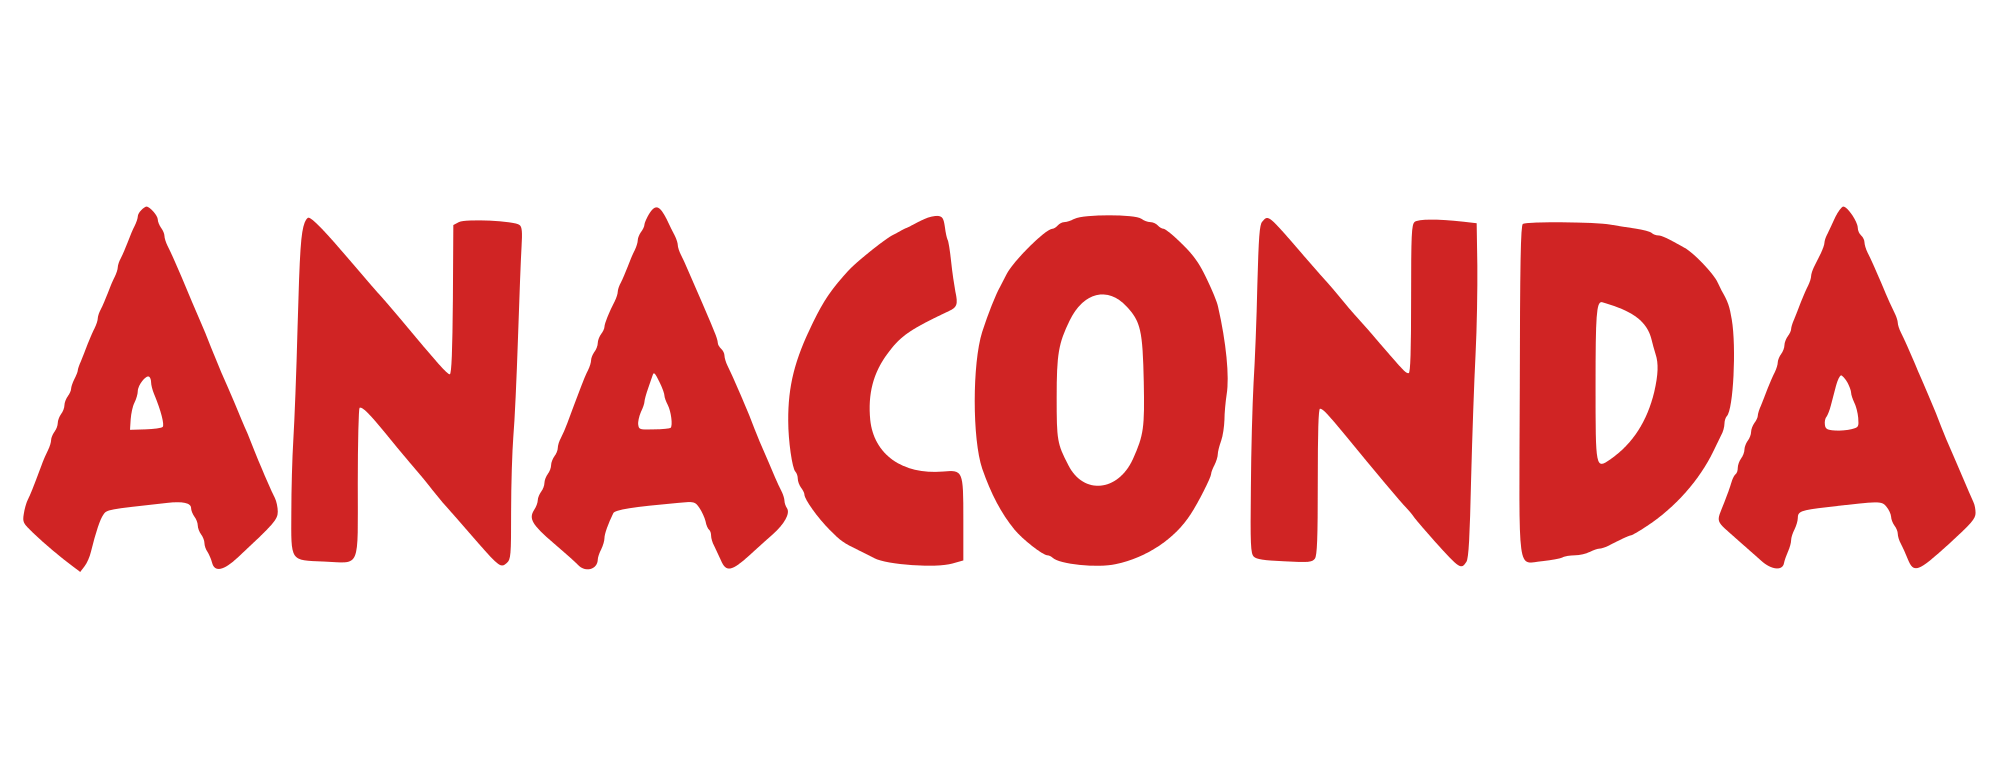 Anaconda Logo - Anaconda logo.svg